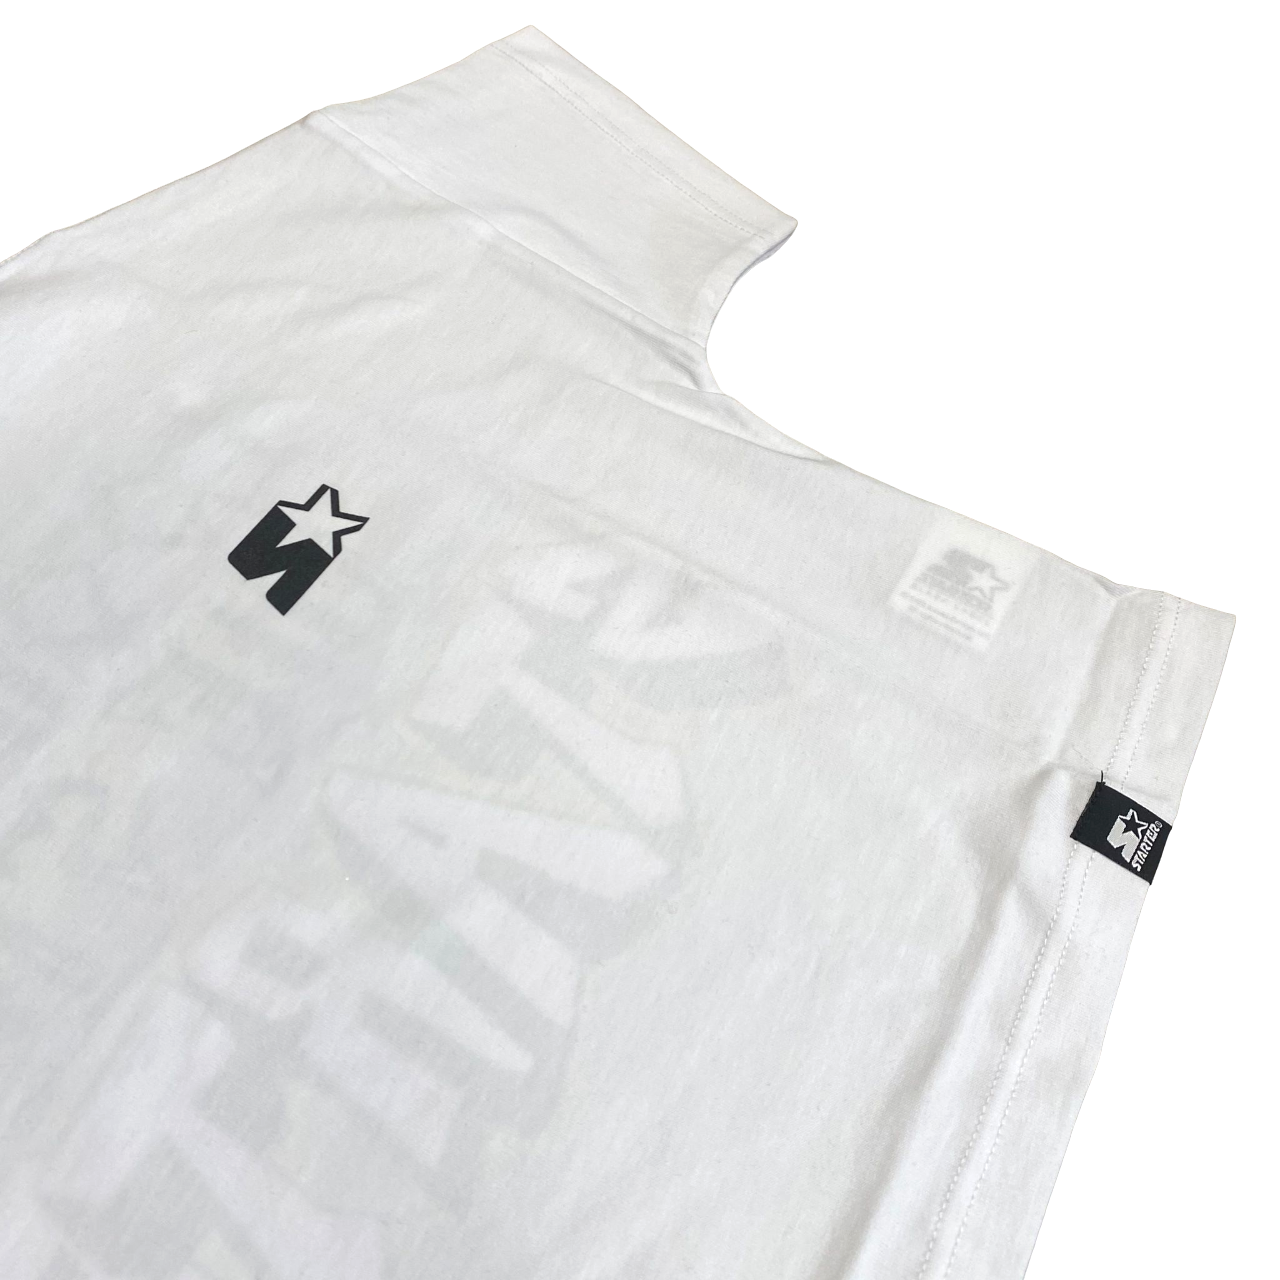 Starter short sleeve t-shirt for girls with 3240 white print